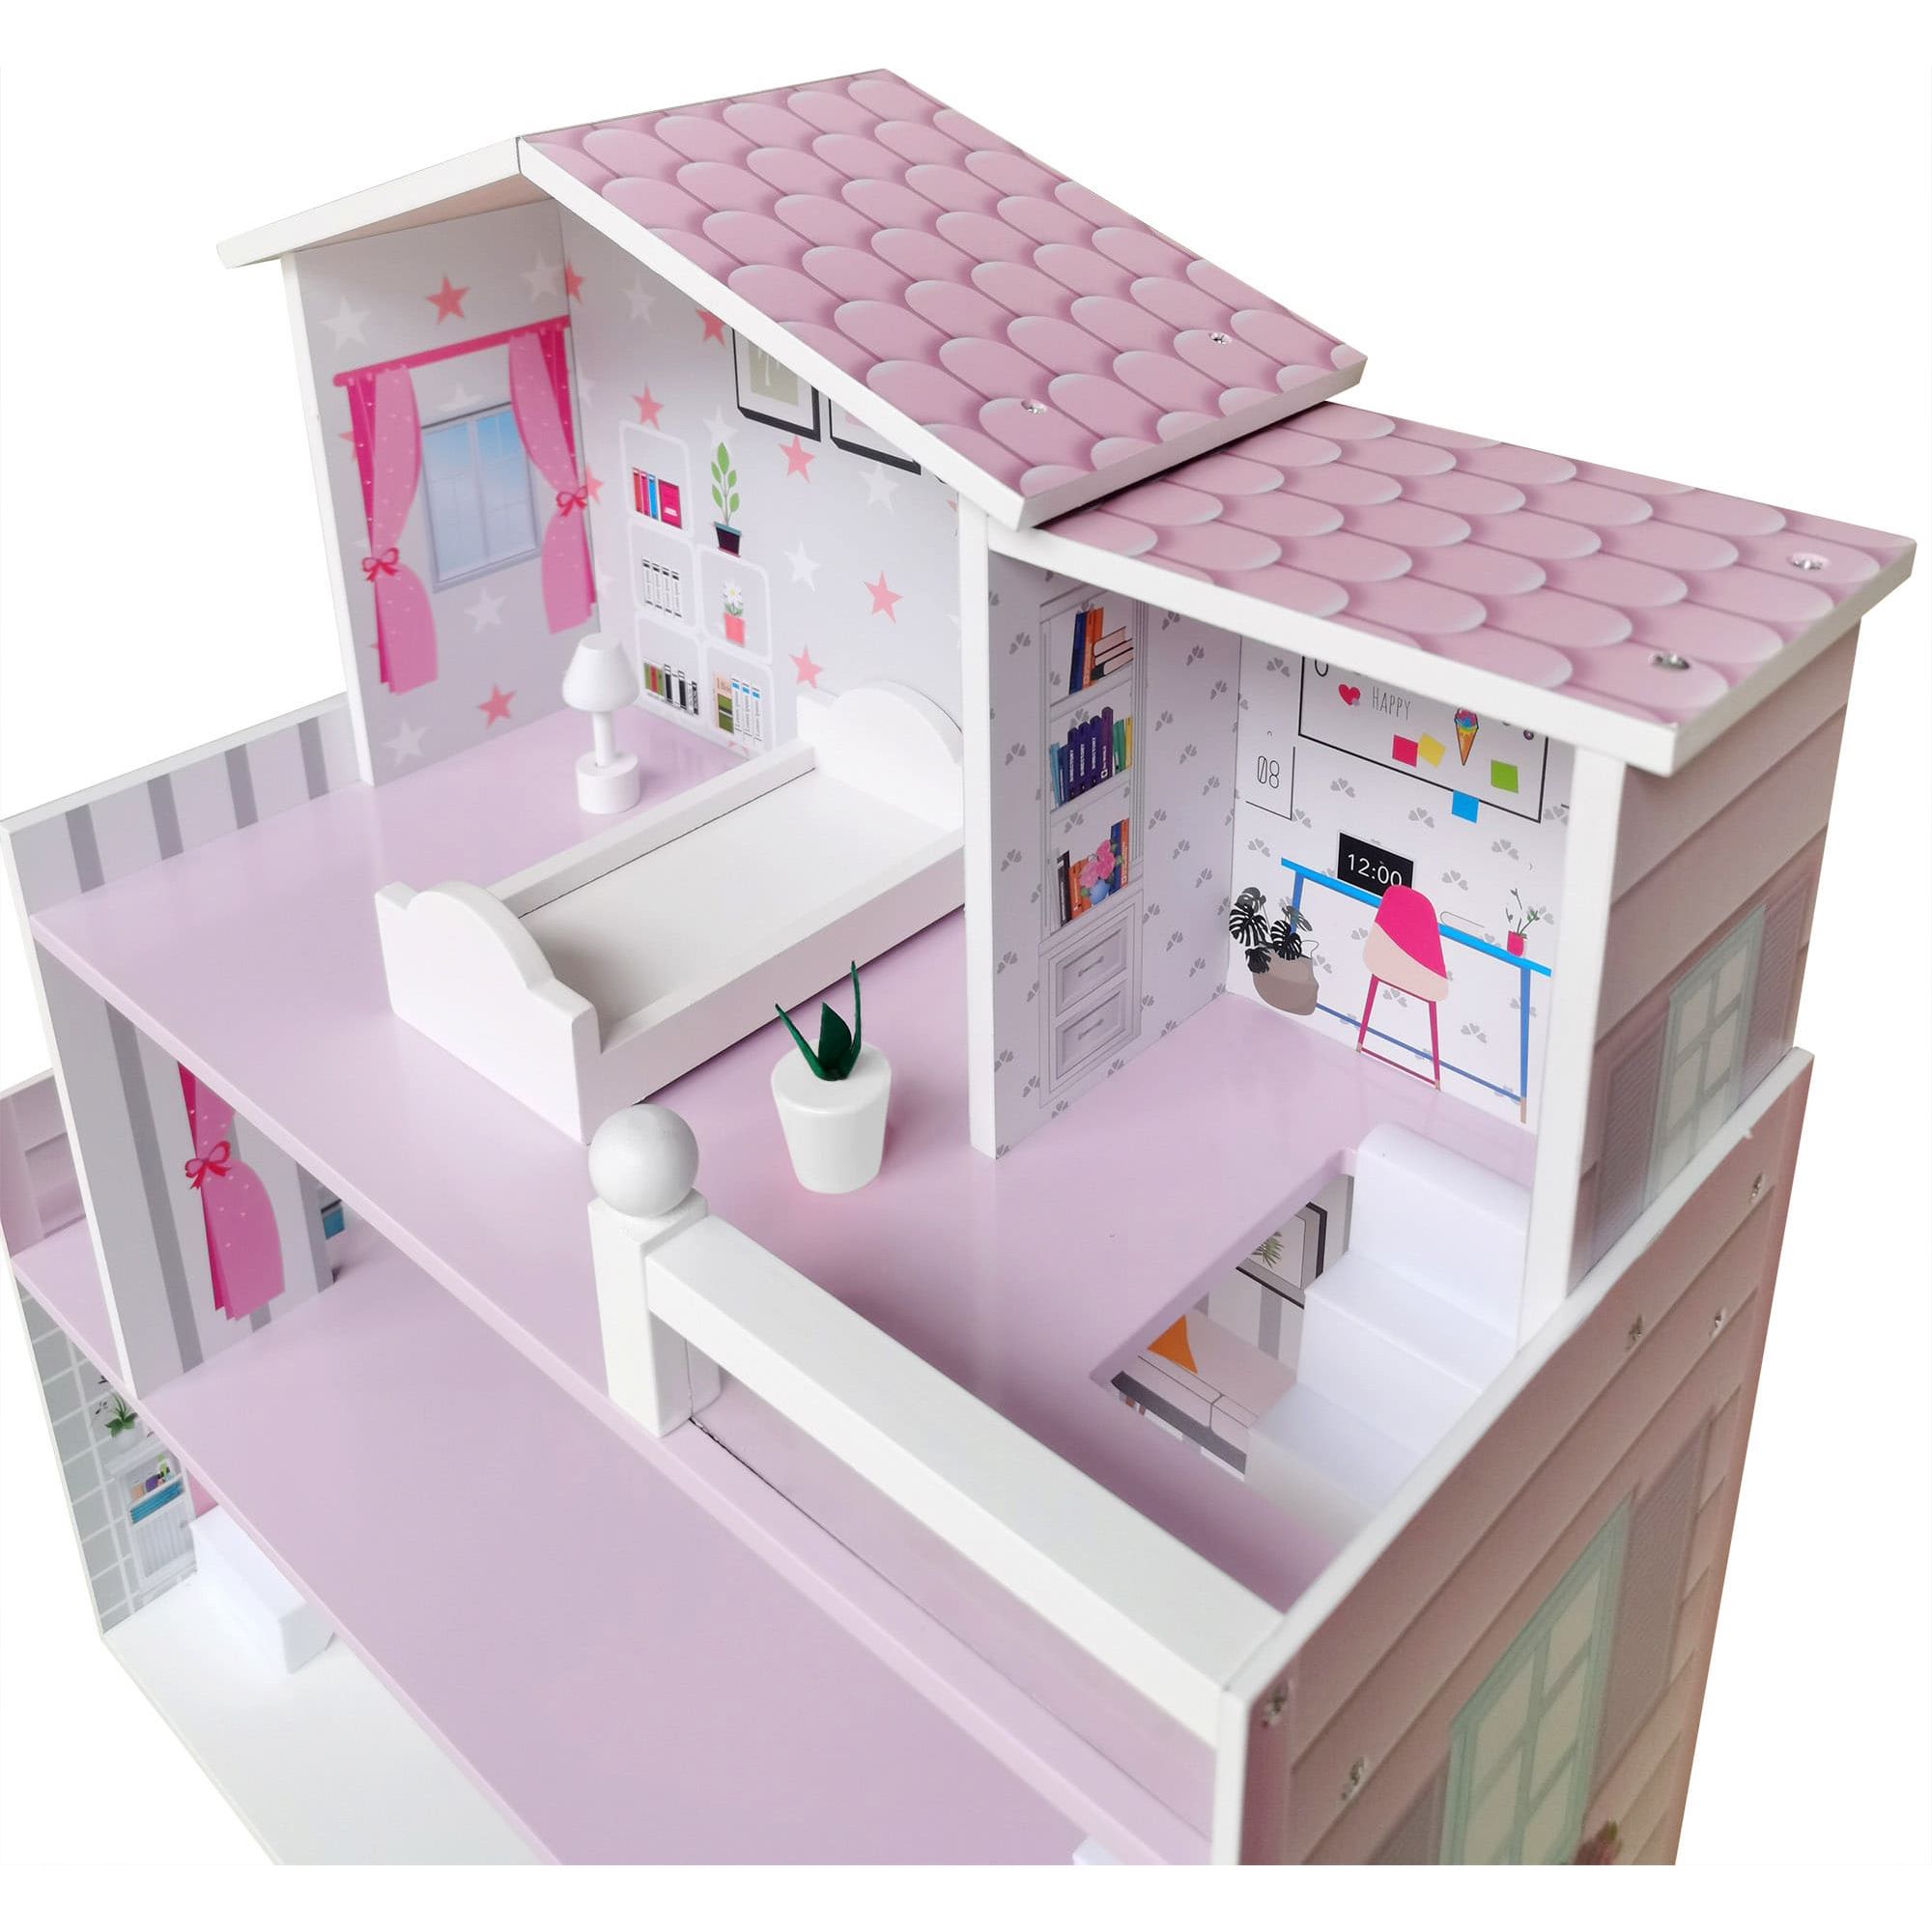 Іграшковий будиночок дерев'яний FreeON рожевий (47290) - фото 4